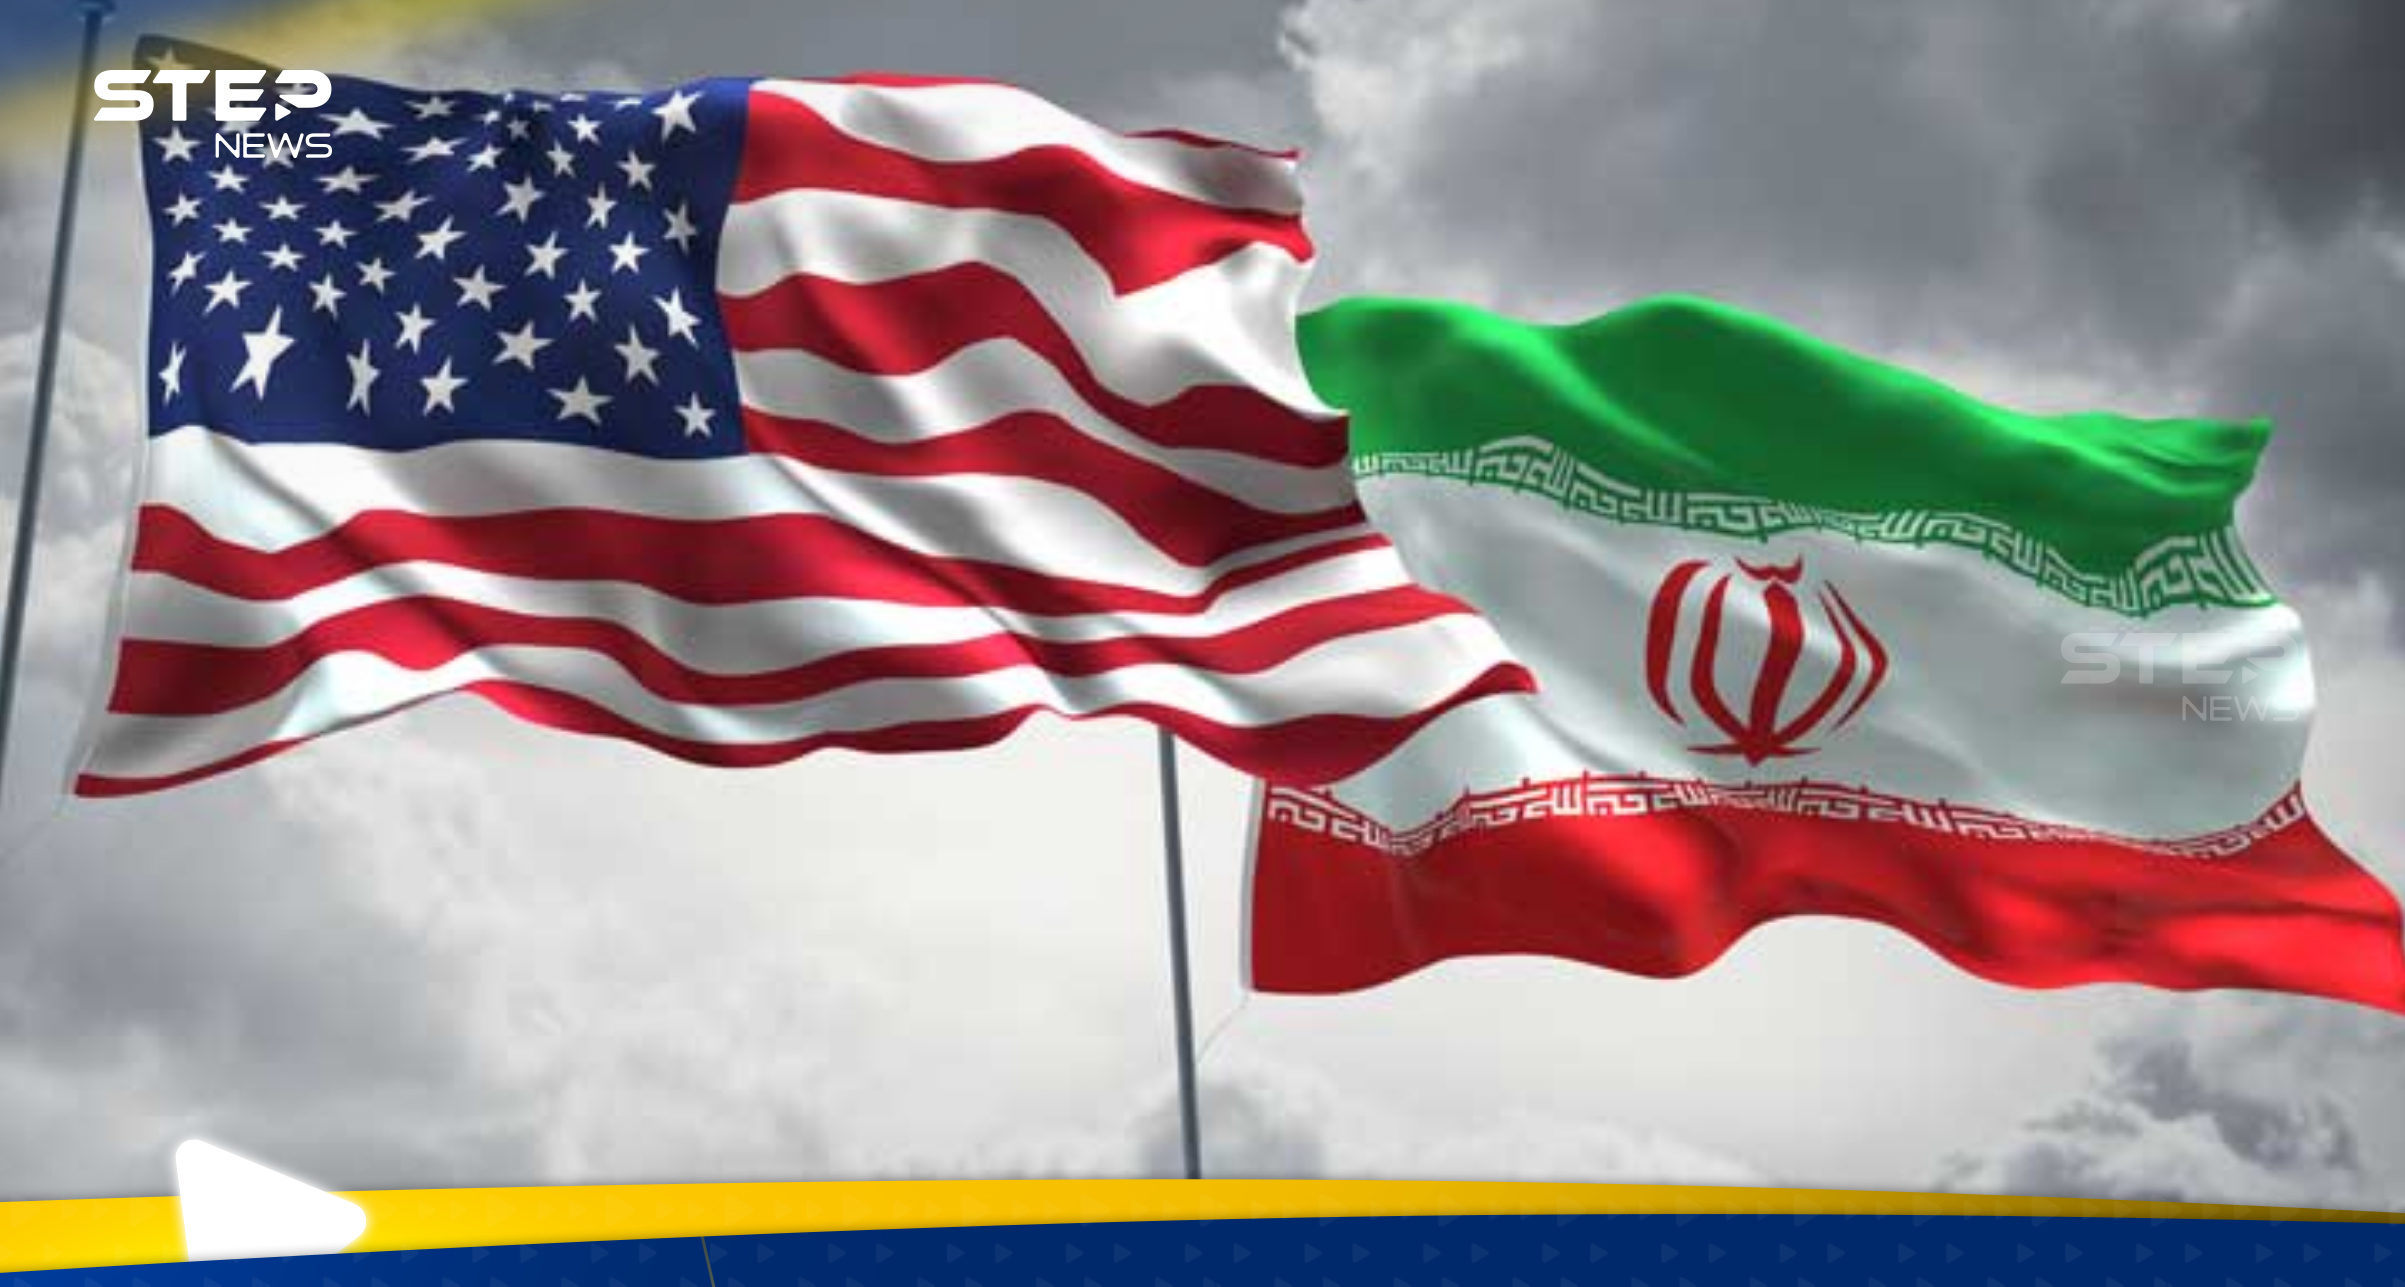 تقرير يكشف عن محادثات سرية بين أمريكا وإيران حول الحوثيين وطهران طرحت شرطاً واحداً 